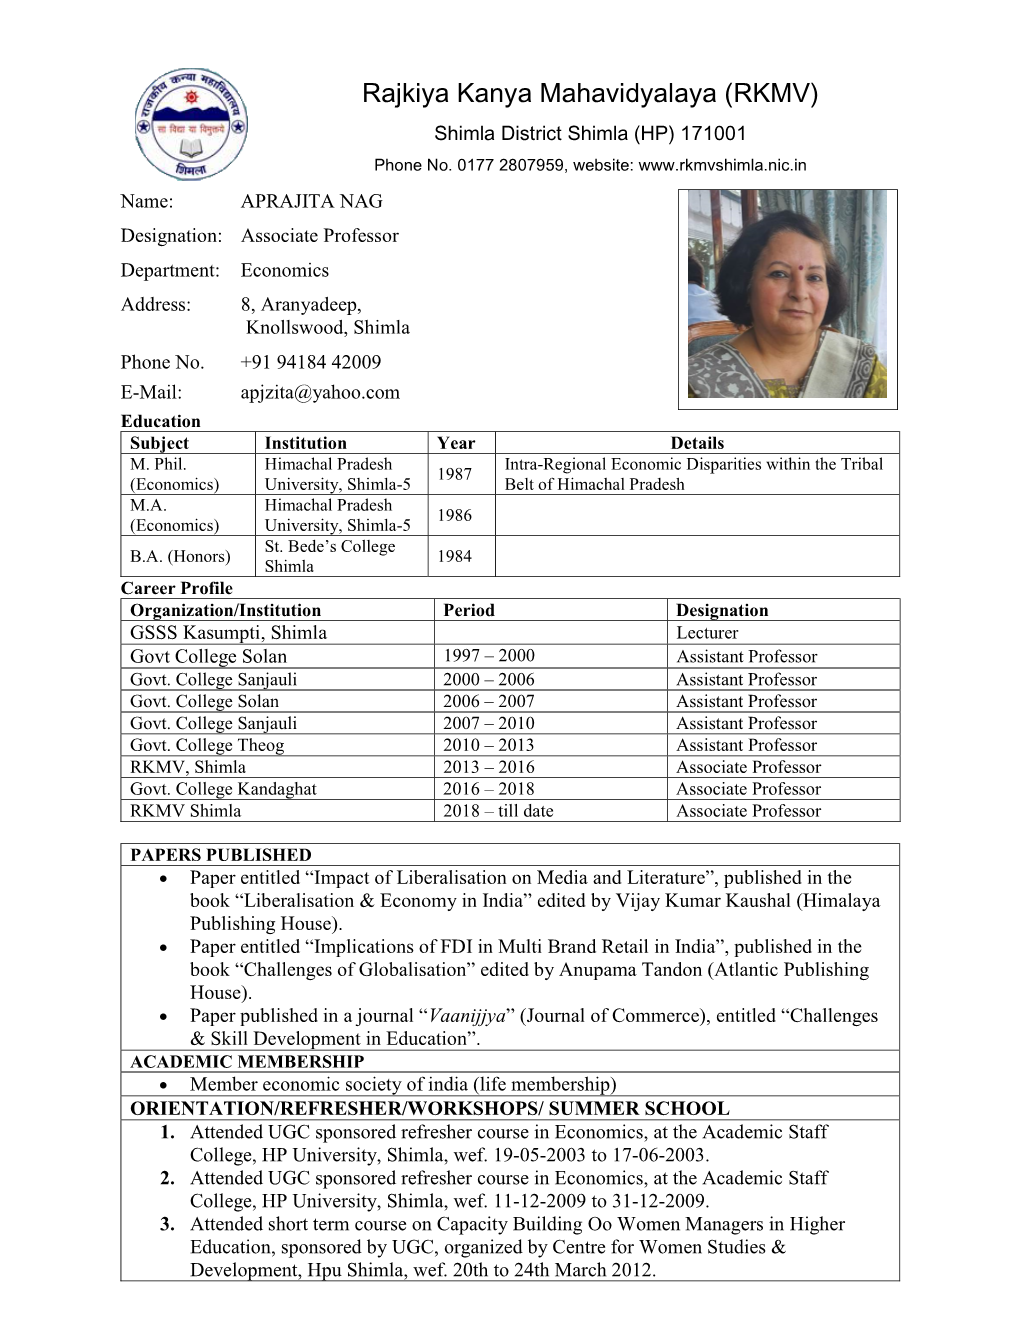 Rajkiya Kanya Mahavidyalaya (RKMV) Shimla District Shimla (HP) 171001 Phone No